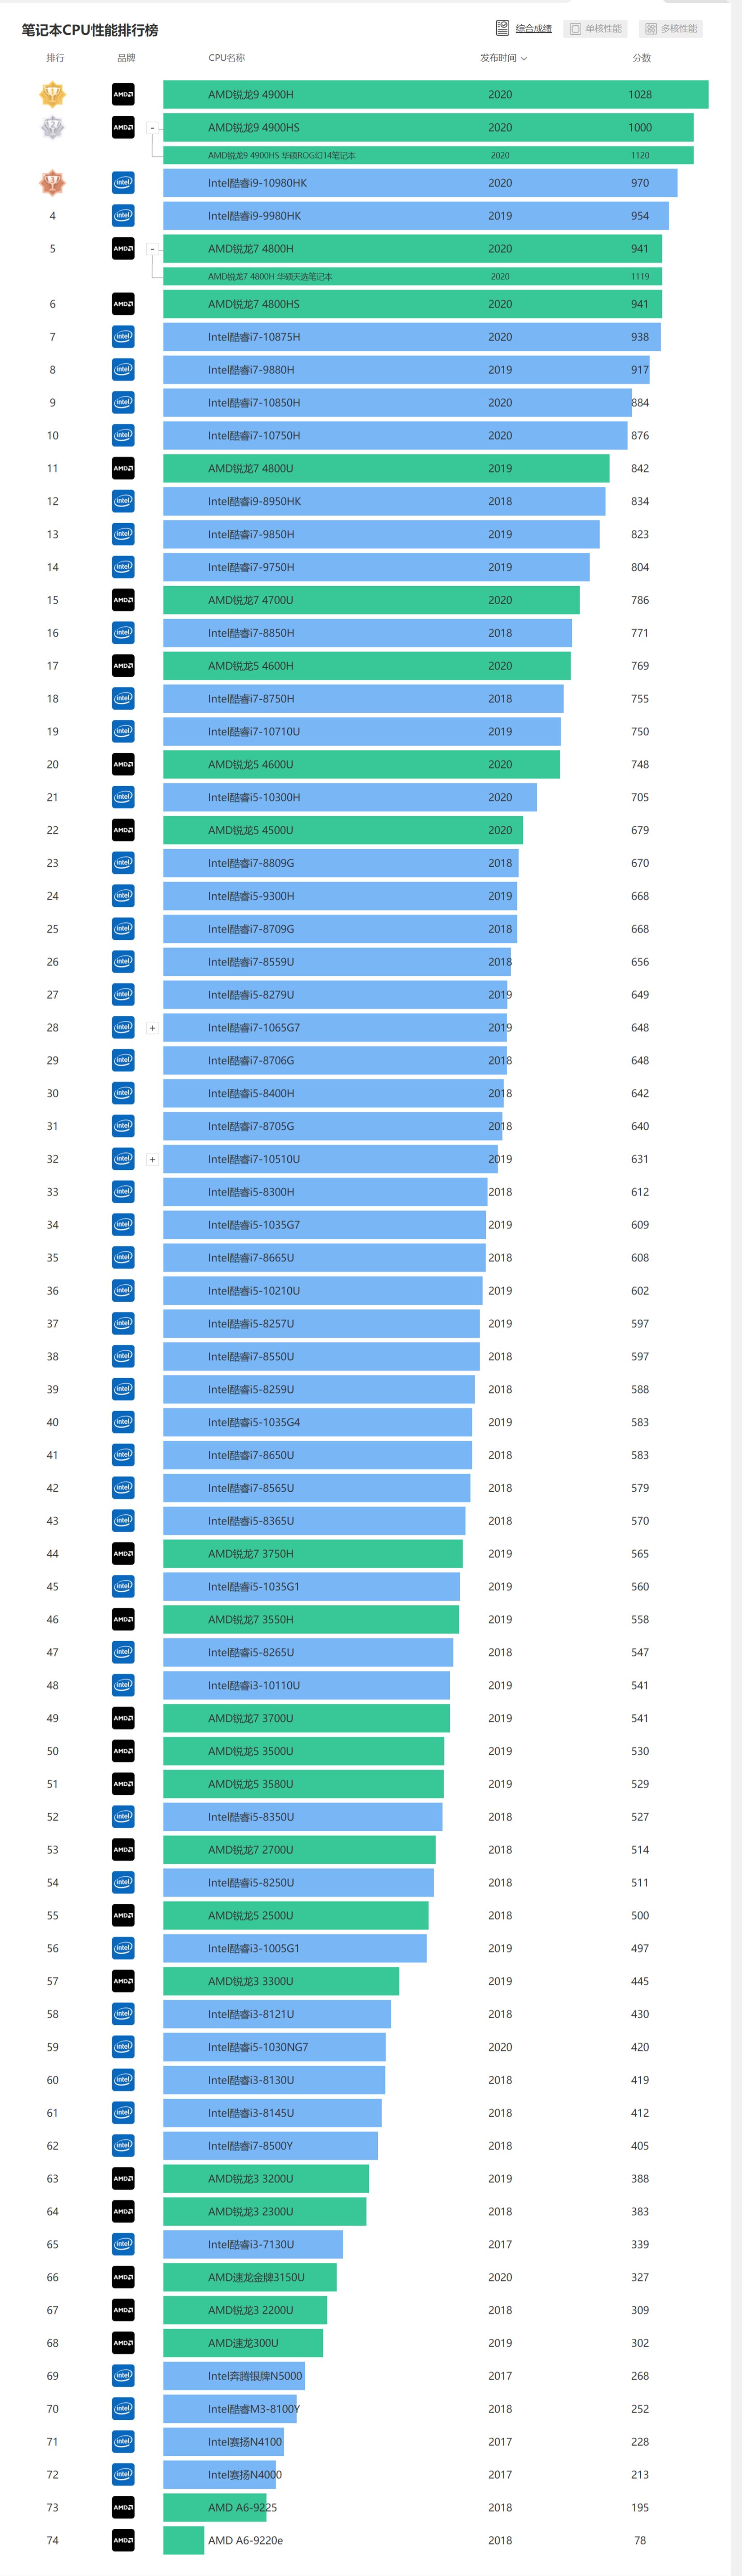 笔记本CPU排行榜 by 驱动之家/快科技（更新时间：2020-08-18）